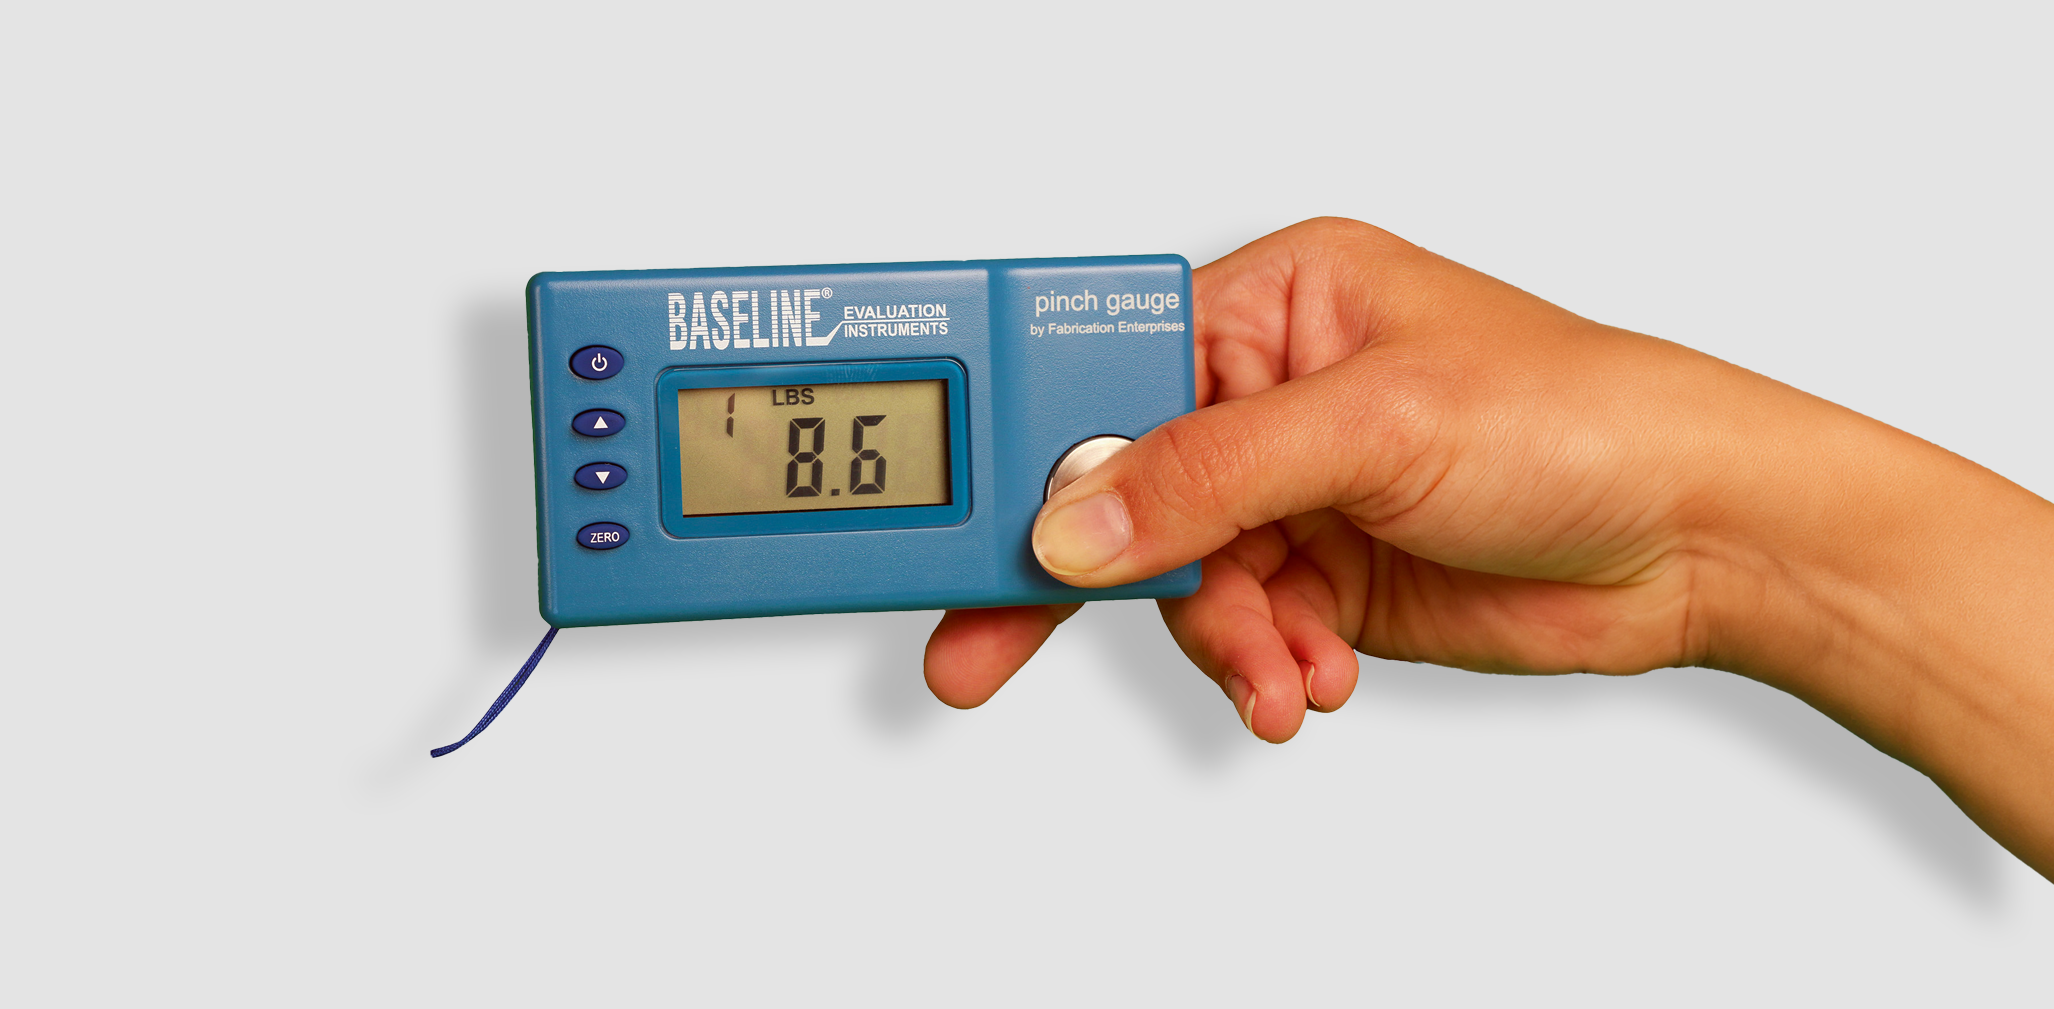 Baseline | Electronic pinch gauge